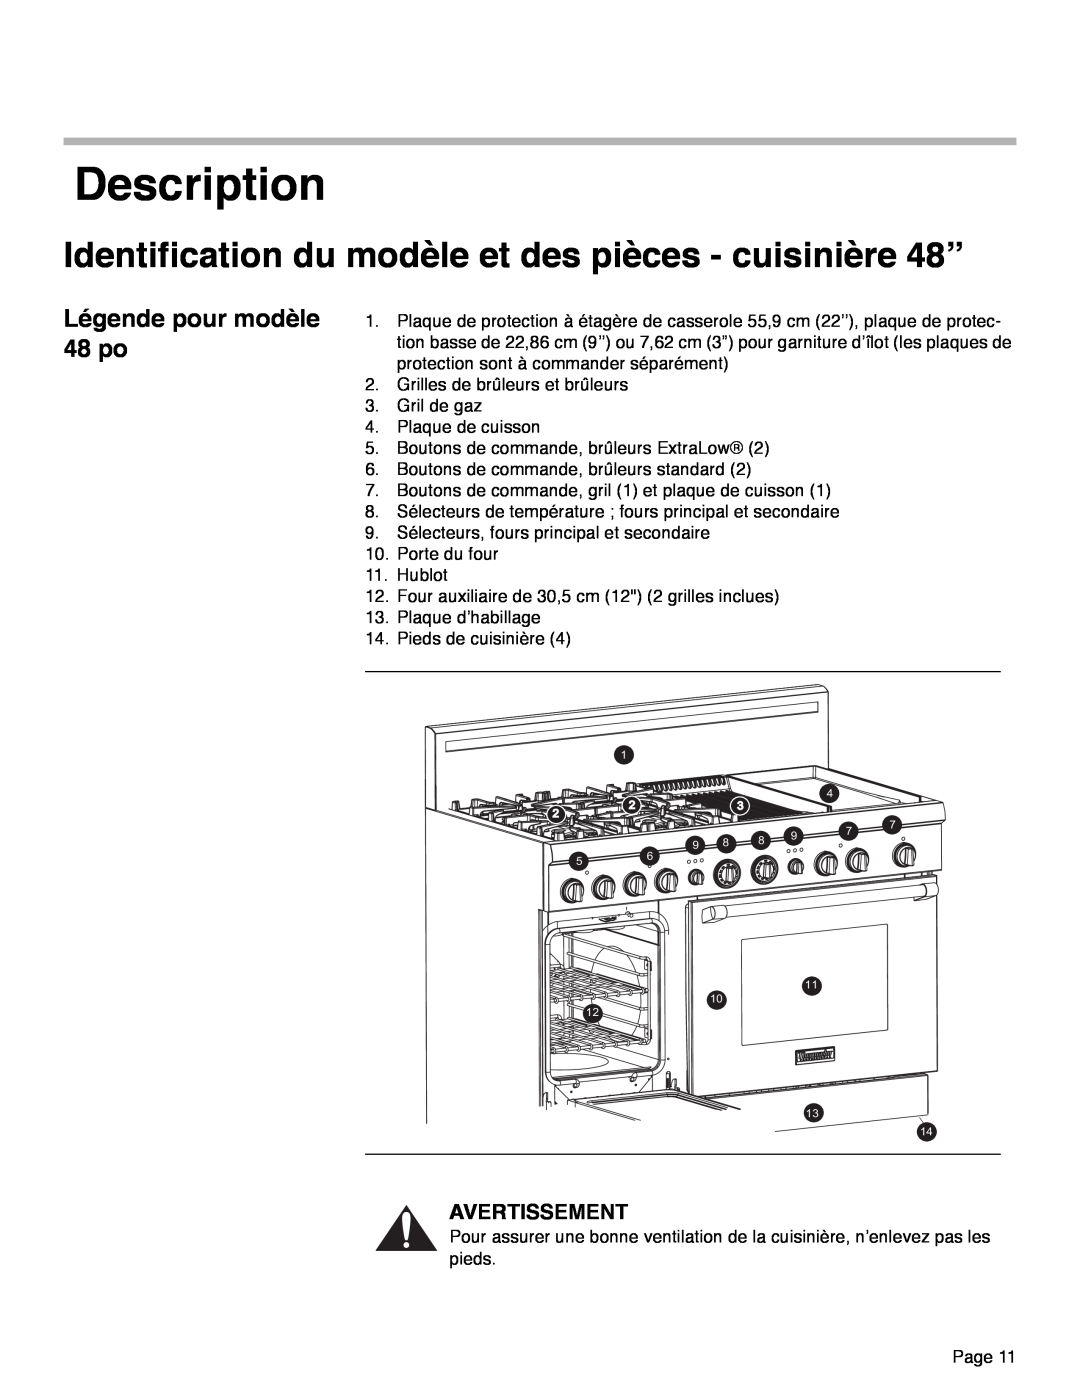 Thermador PRD48, PRD36, PRD30 manual Description, Légende pour modèle 48 po, Avertissement 